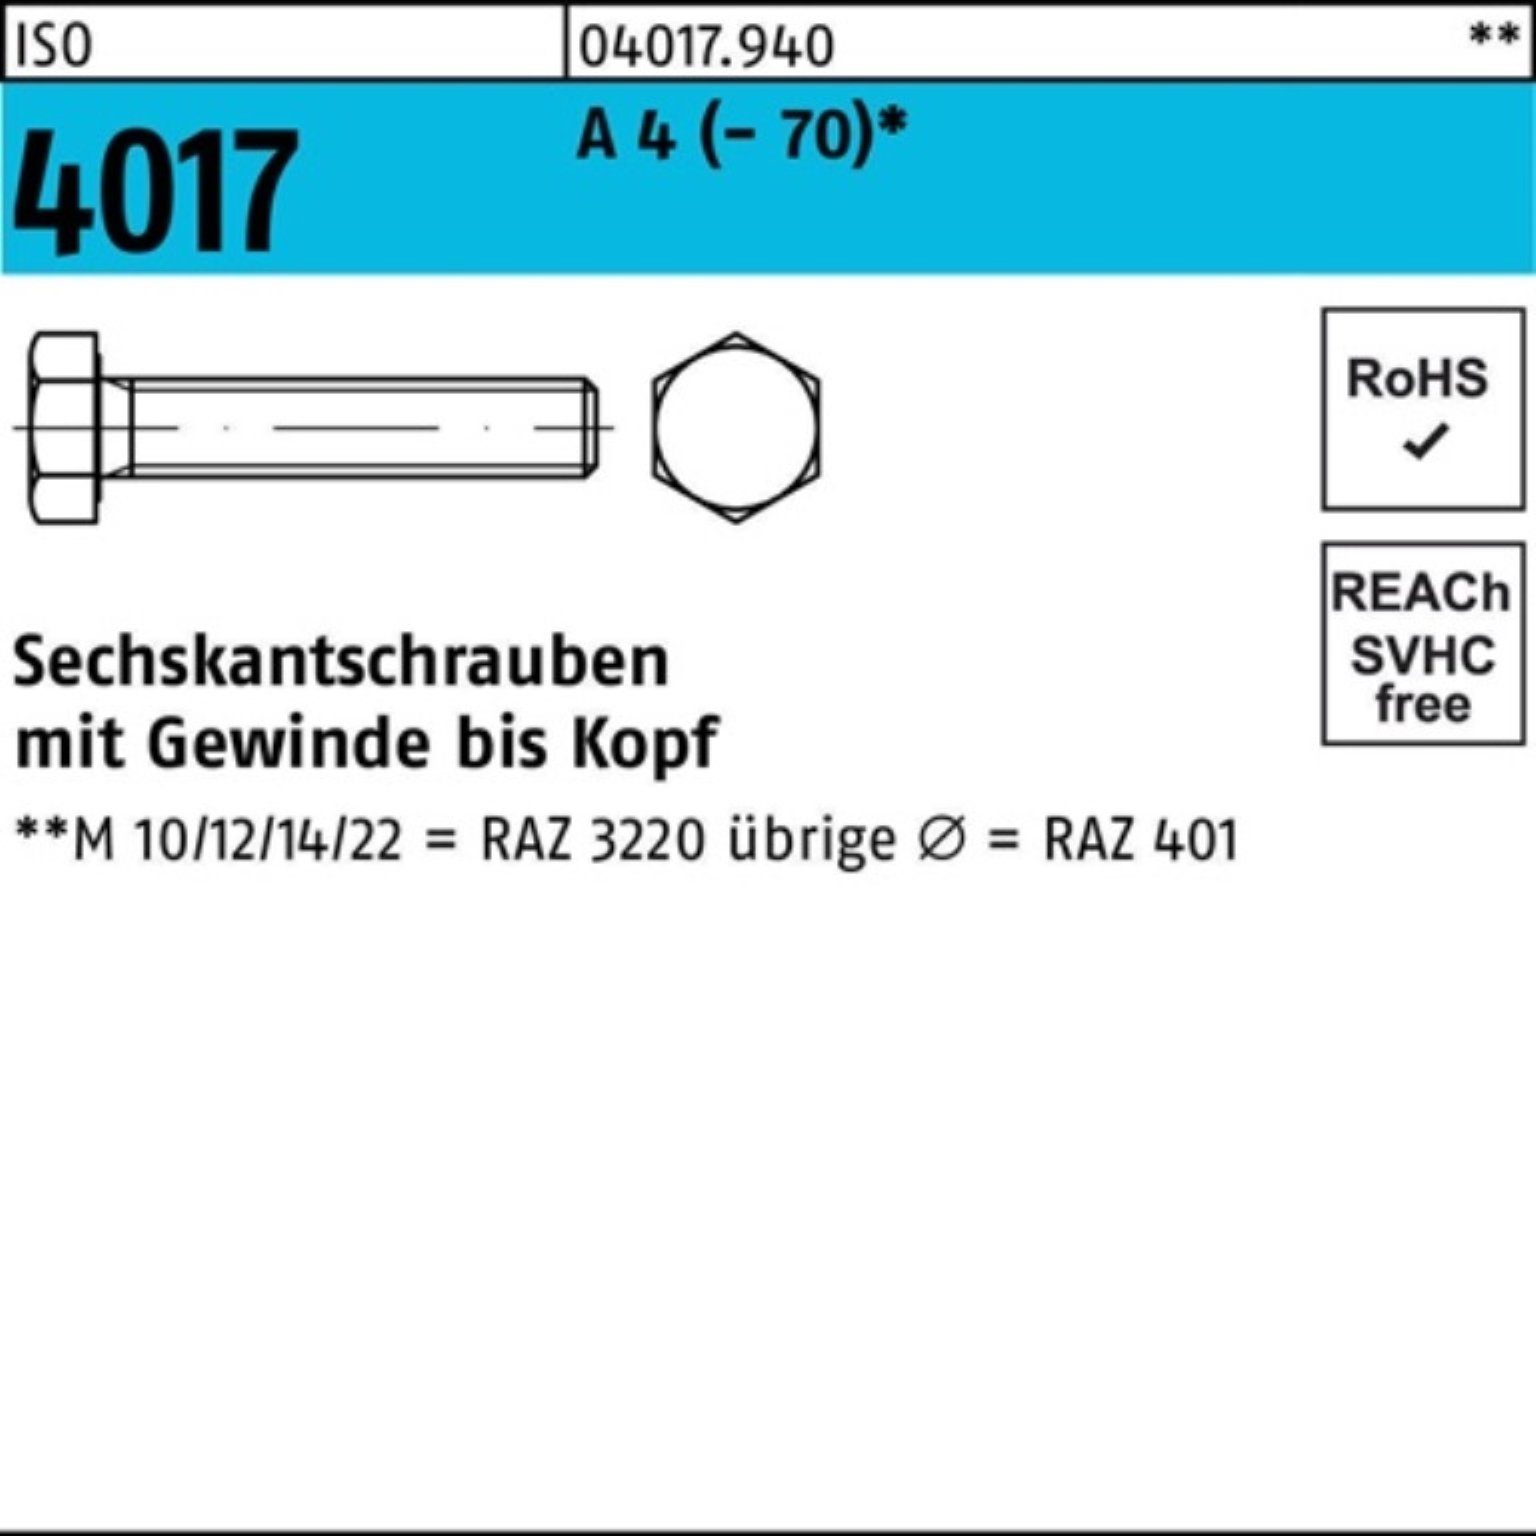 Bufab Sechskantschraube 100er Pack Sechskantschraube ISO 4017 VG M24x 100 A 4 (70) 1 Stück